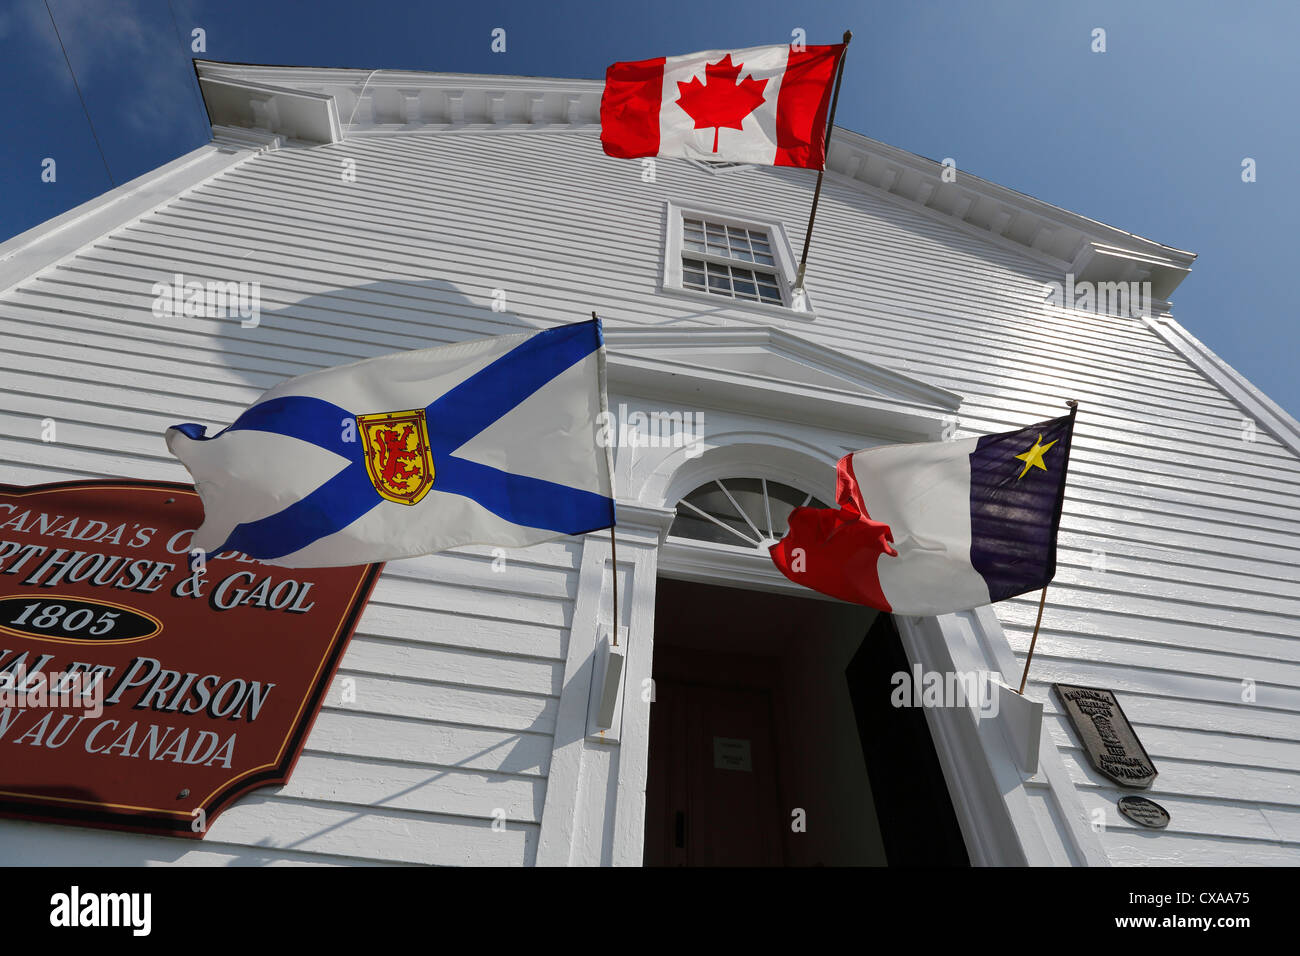 Argyle Township Gerichtshaus & Gaol, Tusket, Nova Scotia, Kanada Stockfoto